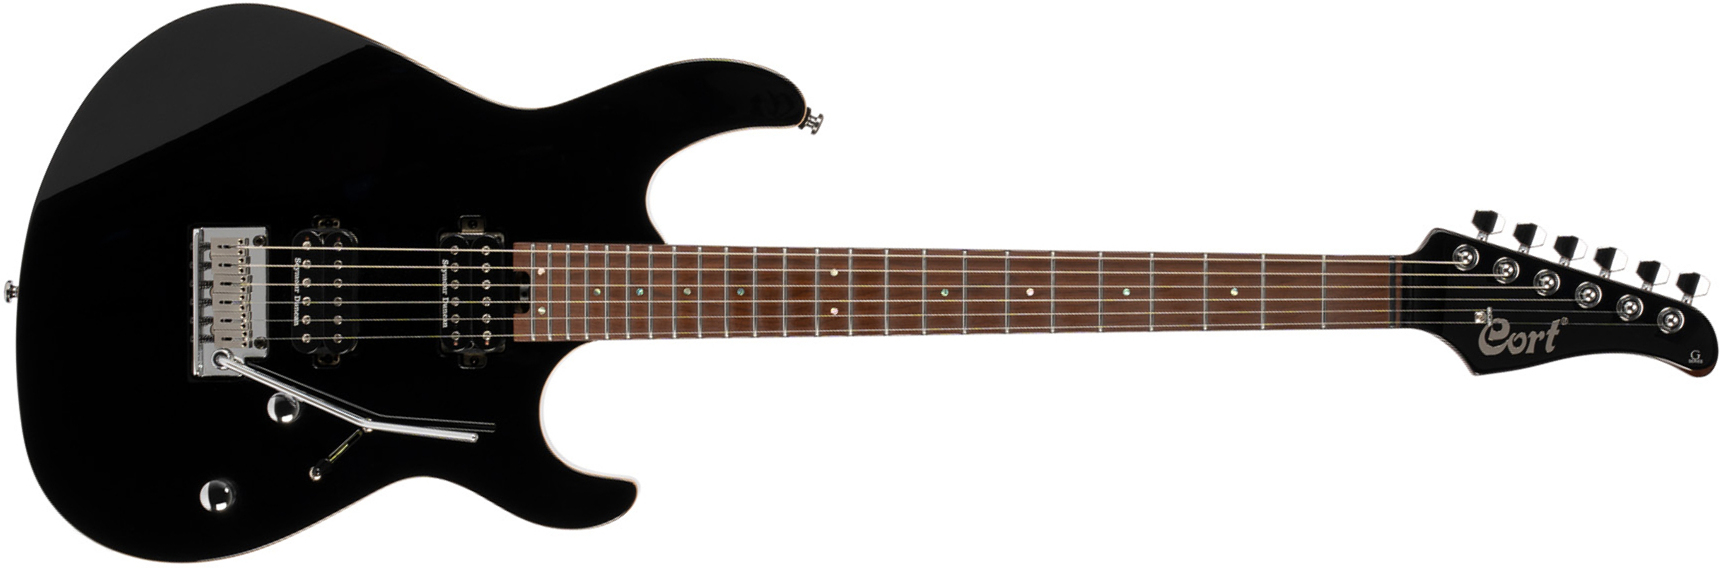 Cort G300 Pro Hh Trem Mn - Black - Guitarra eléctrica con forma de str. - Main picture